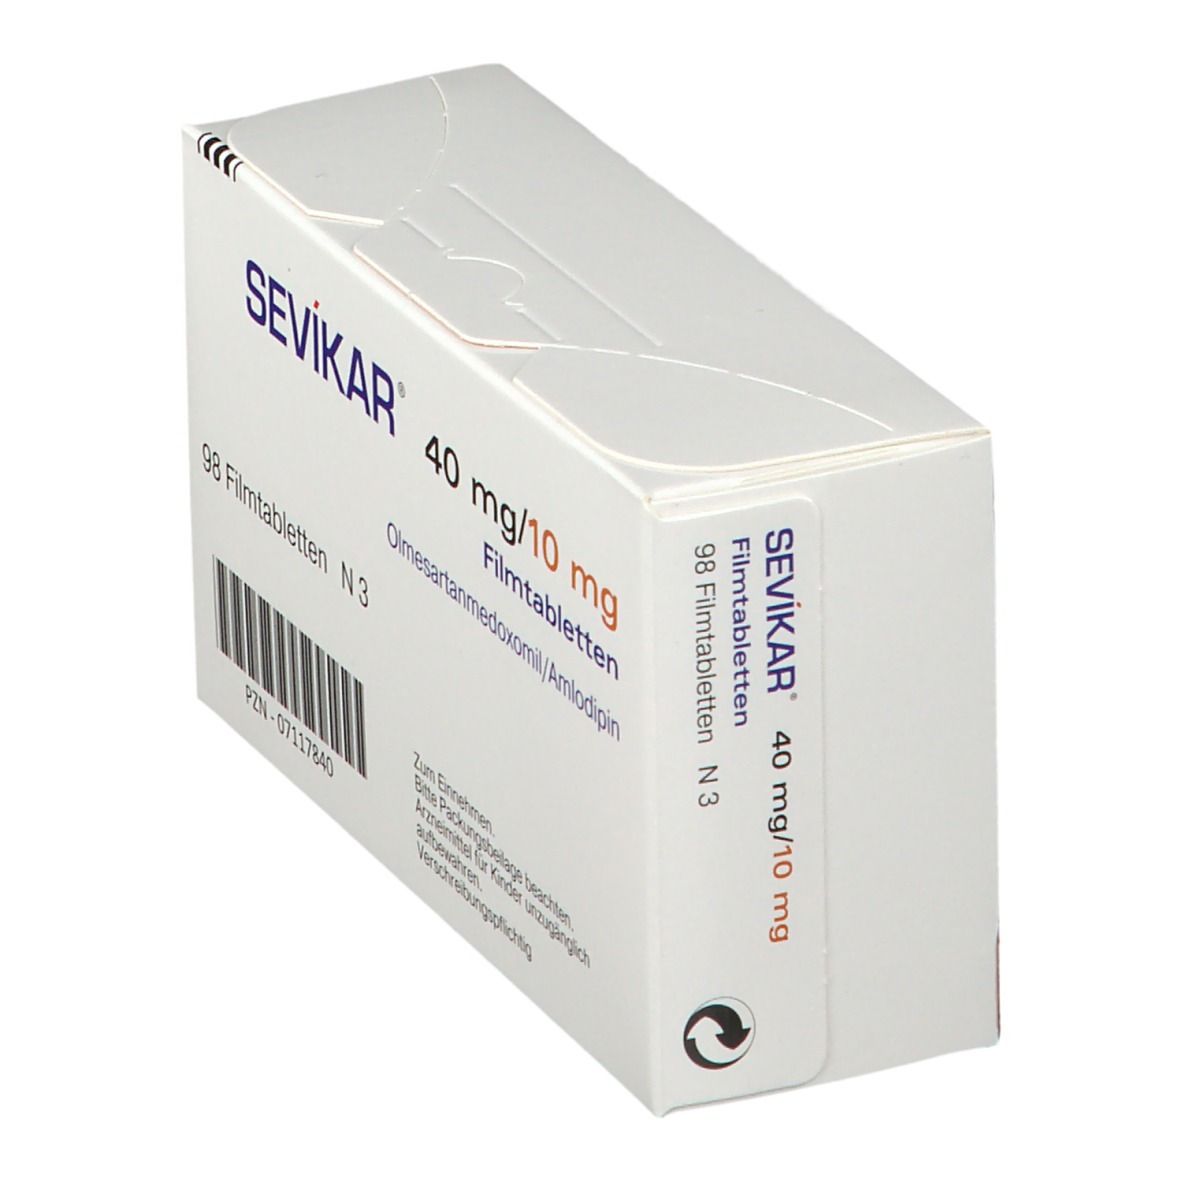 SEVIKAR® 40 mg/10 mg